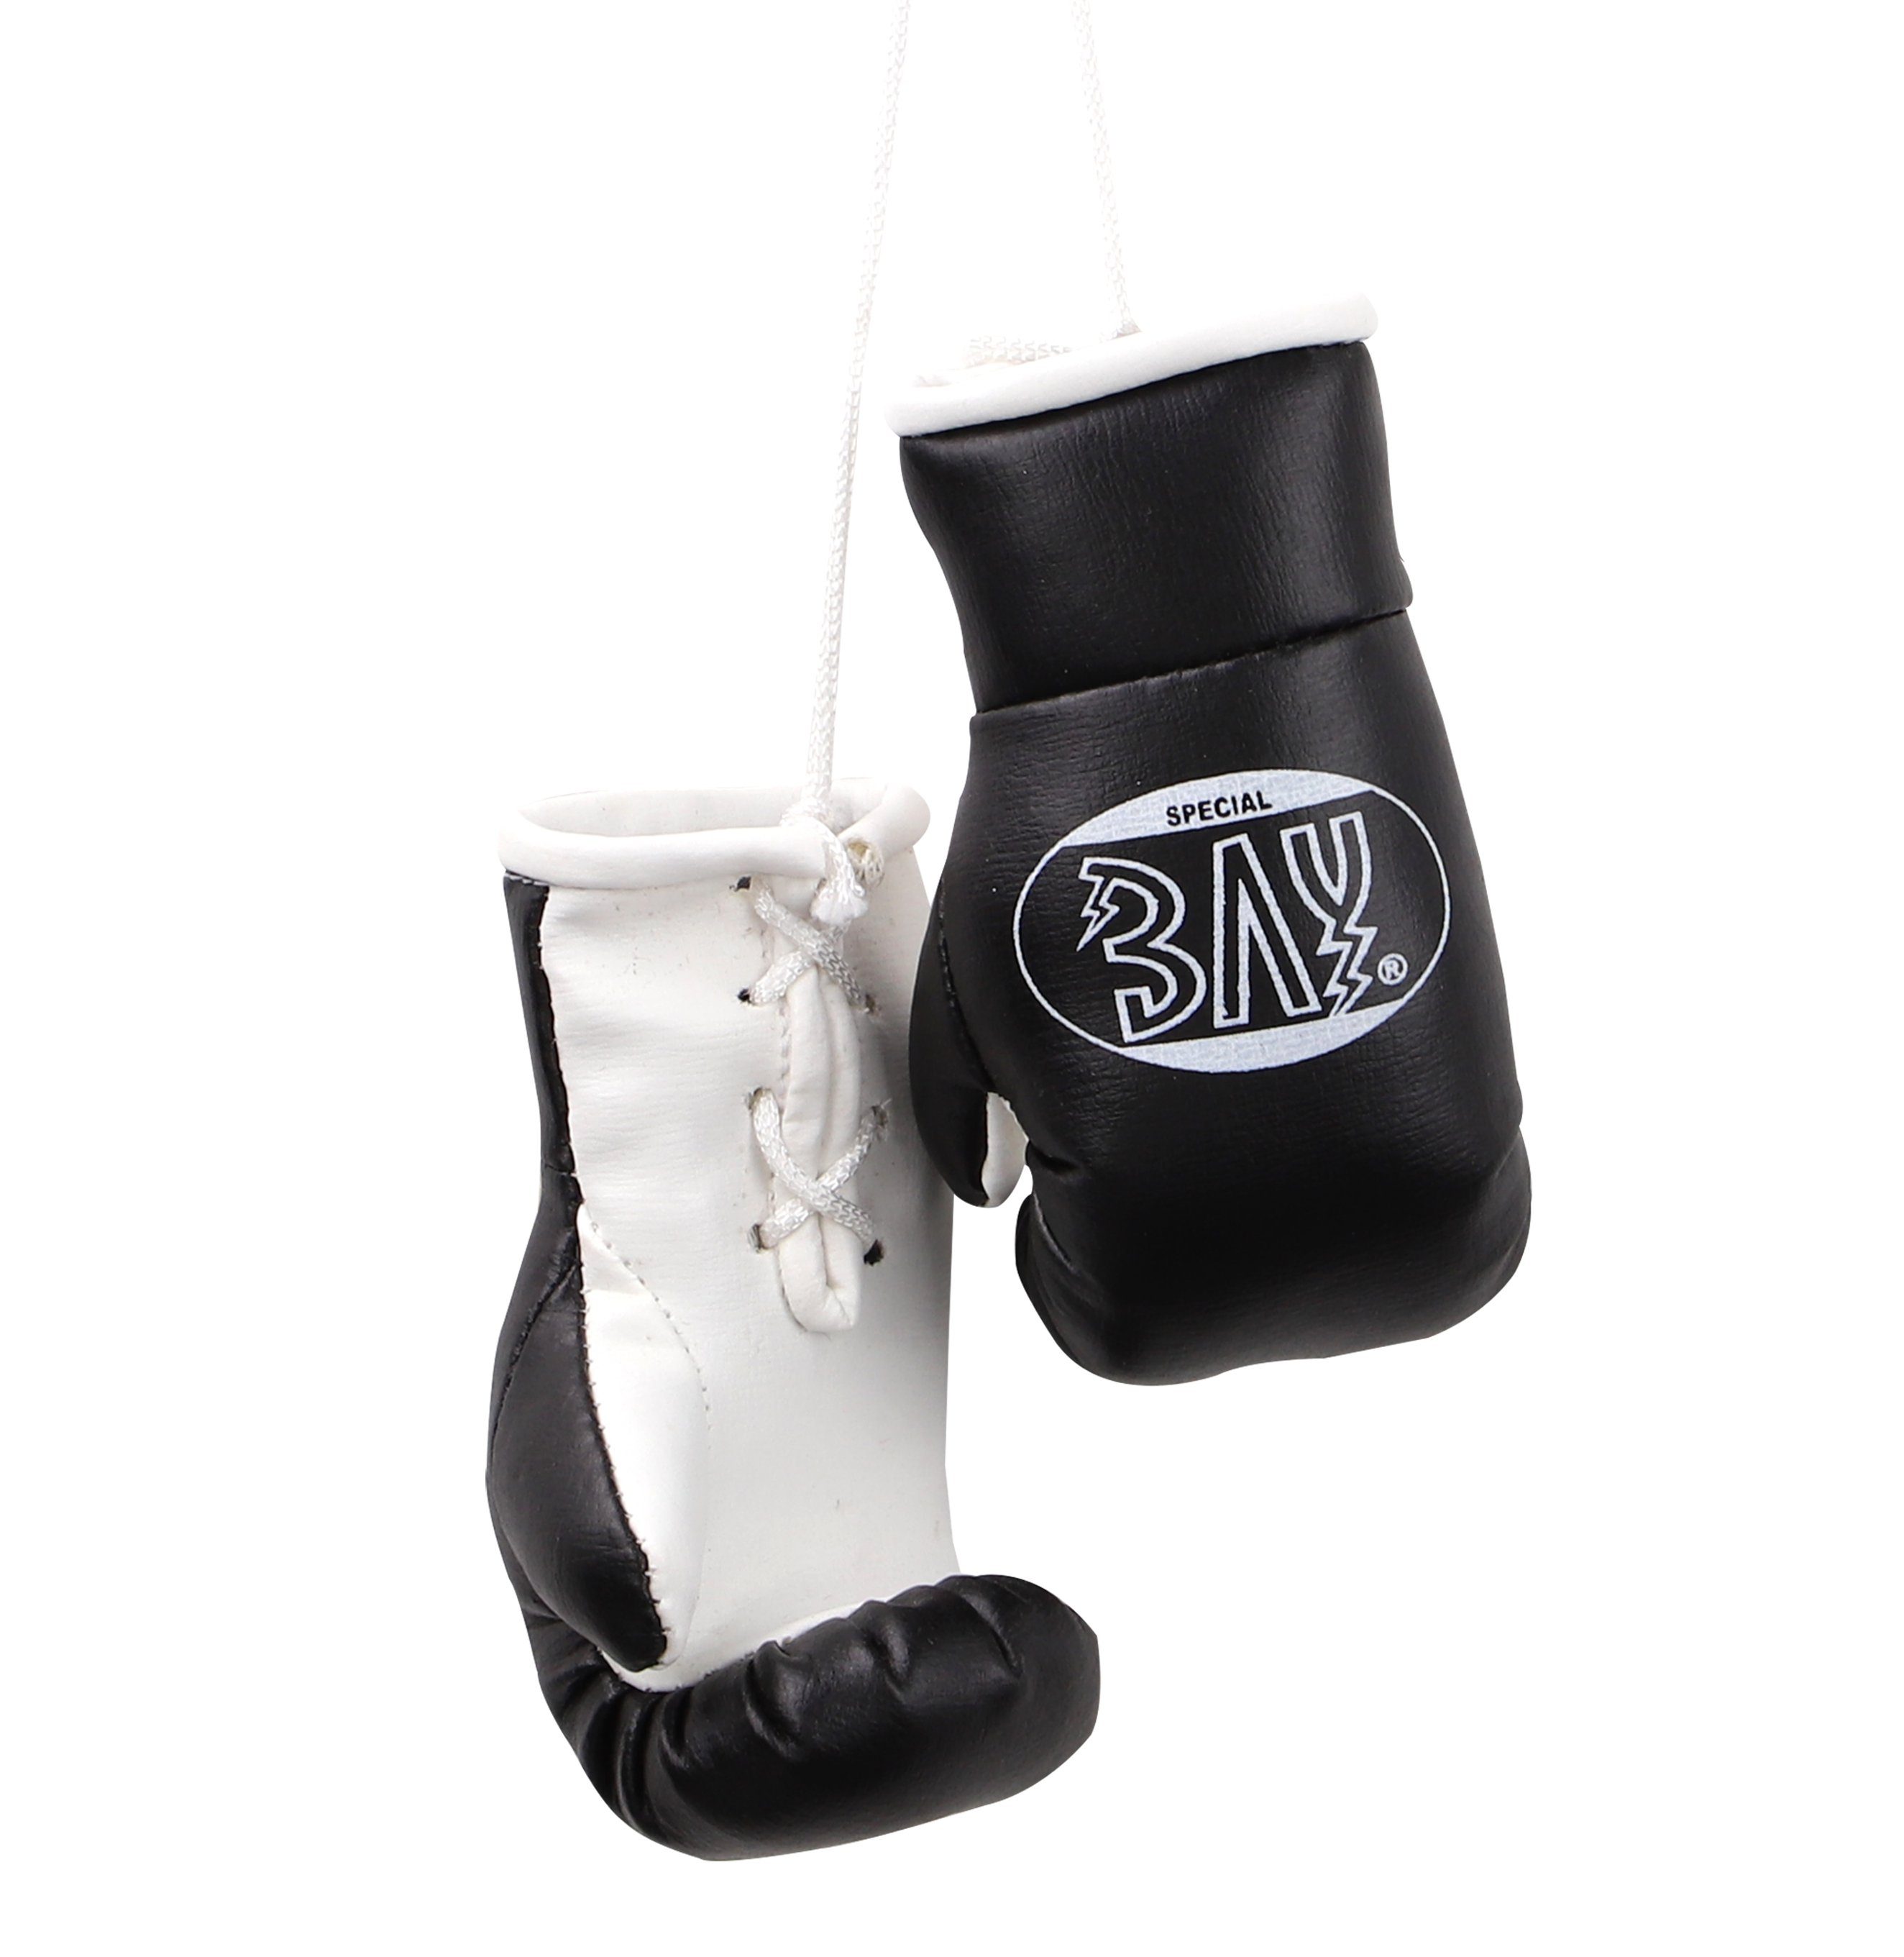 BAY-Sports Boxhandschuhe Mini Deko Box-Handschuhe Boxen Geschenk Auto Paar  Let´s Fight, Anhänger für Tasche, Autospiegel usw.